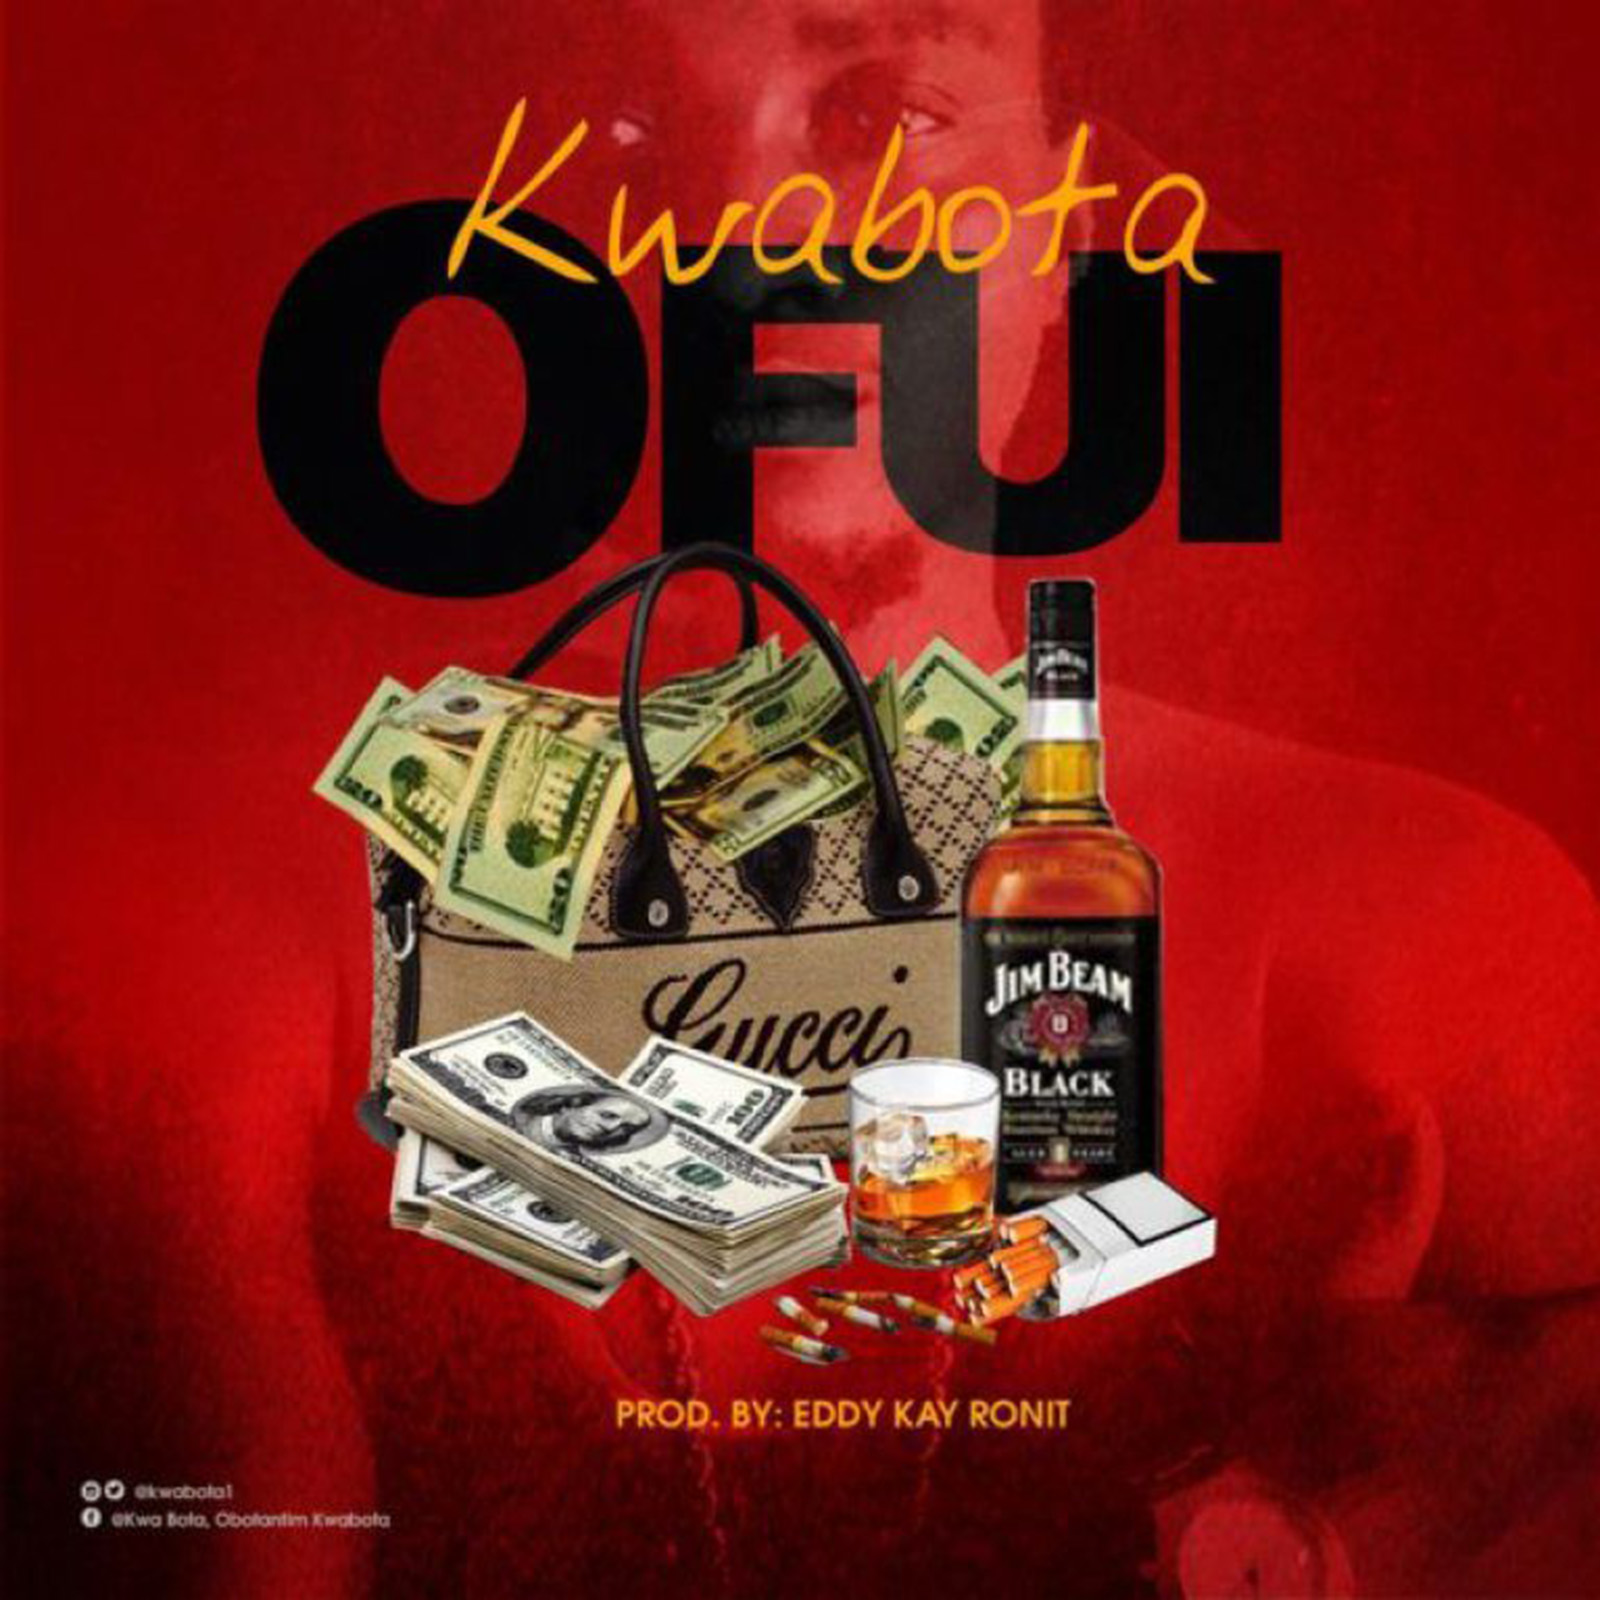 Ofui by Kwabota